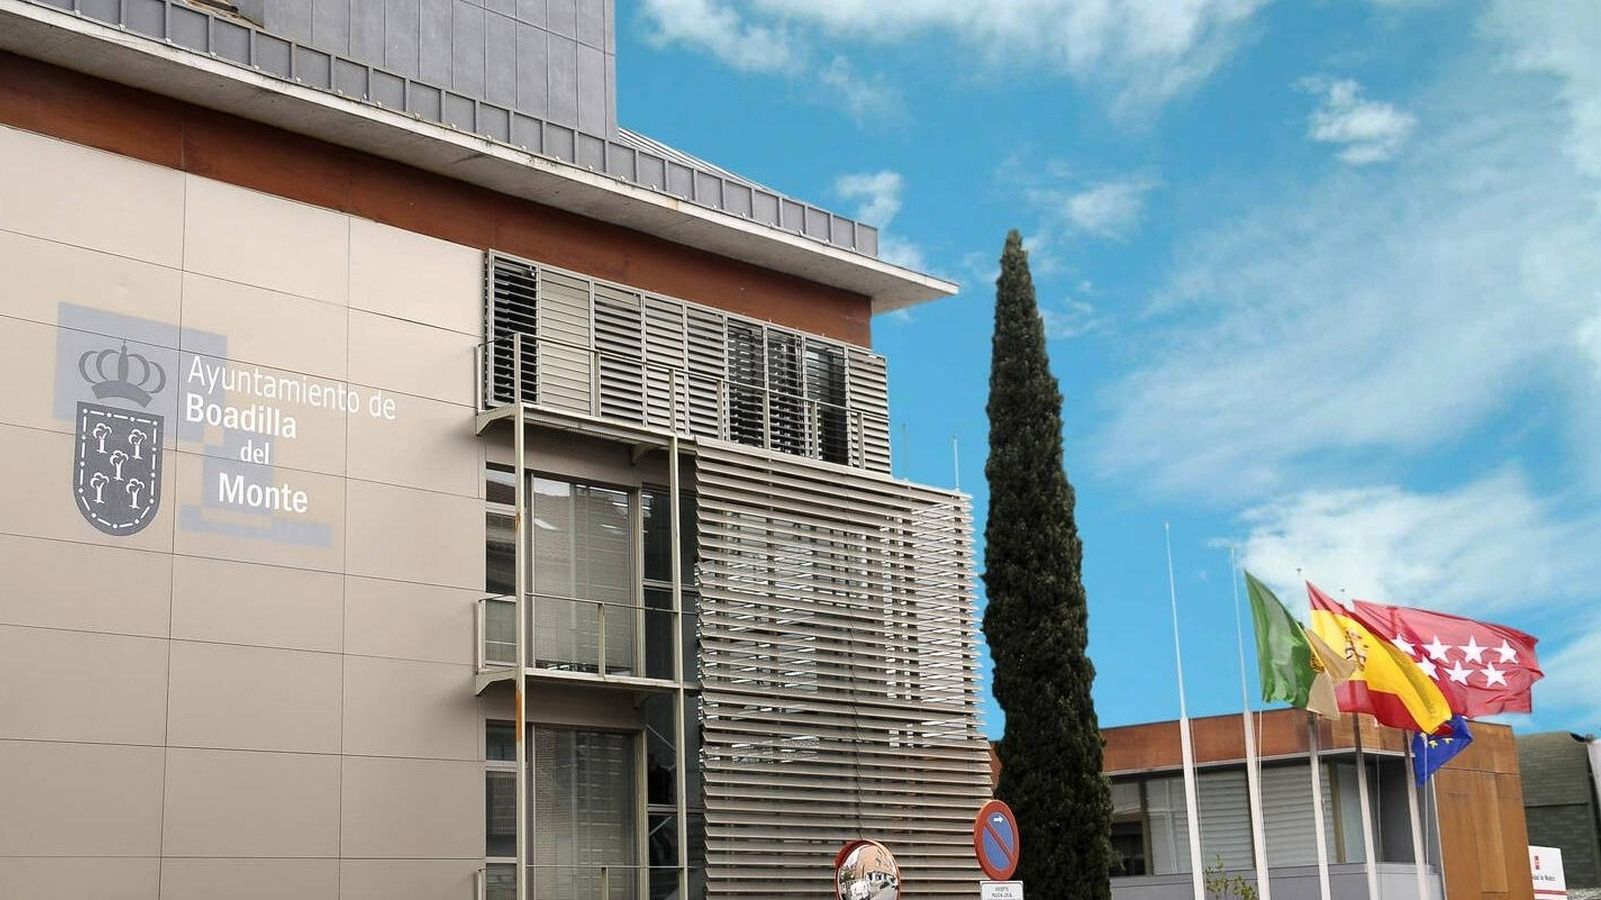 El Ayuntamiento de Boadilla anuncia la convocatoria de 27 plazas de empleo público